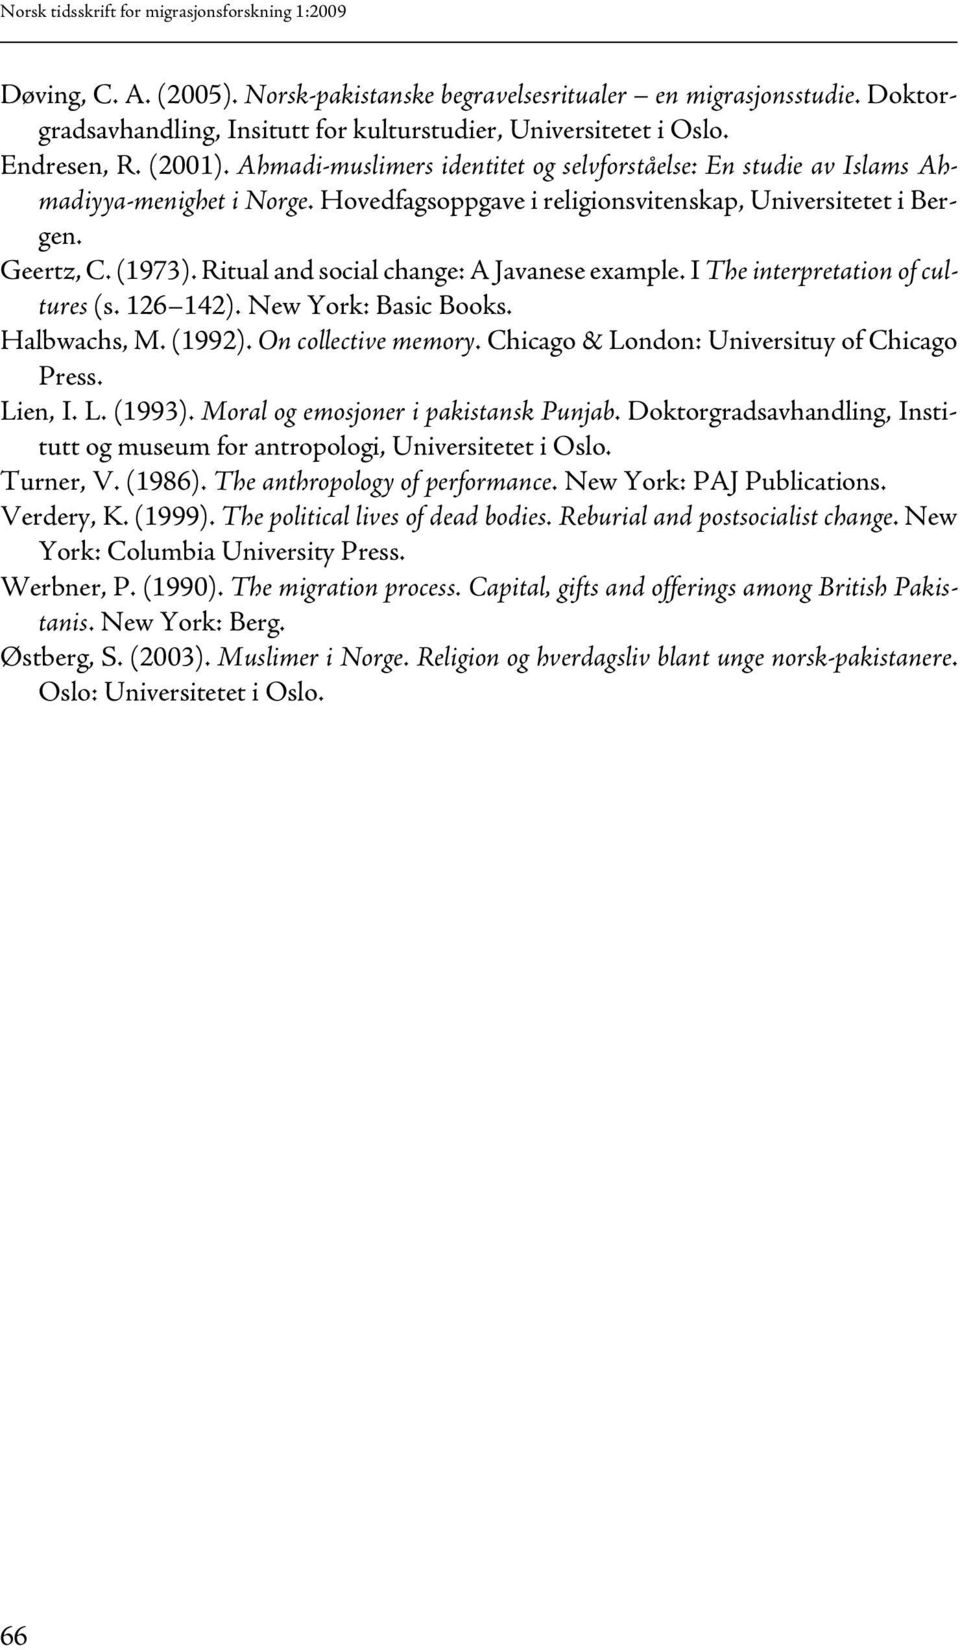 Hovedfagsoppgave i religionsvitenskap, Universitetet i Bergen. Geertz, C. (1973). Ritual and social change: A Javanese example. I The interpretation of cultures (s. 126 142). New York: Basic Books.